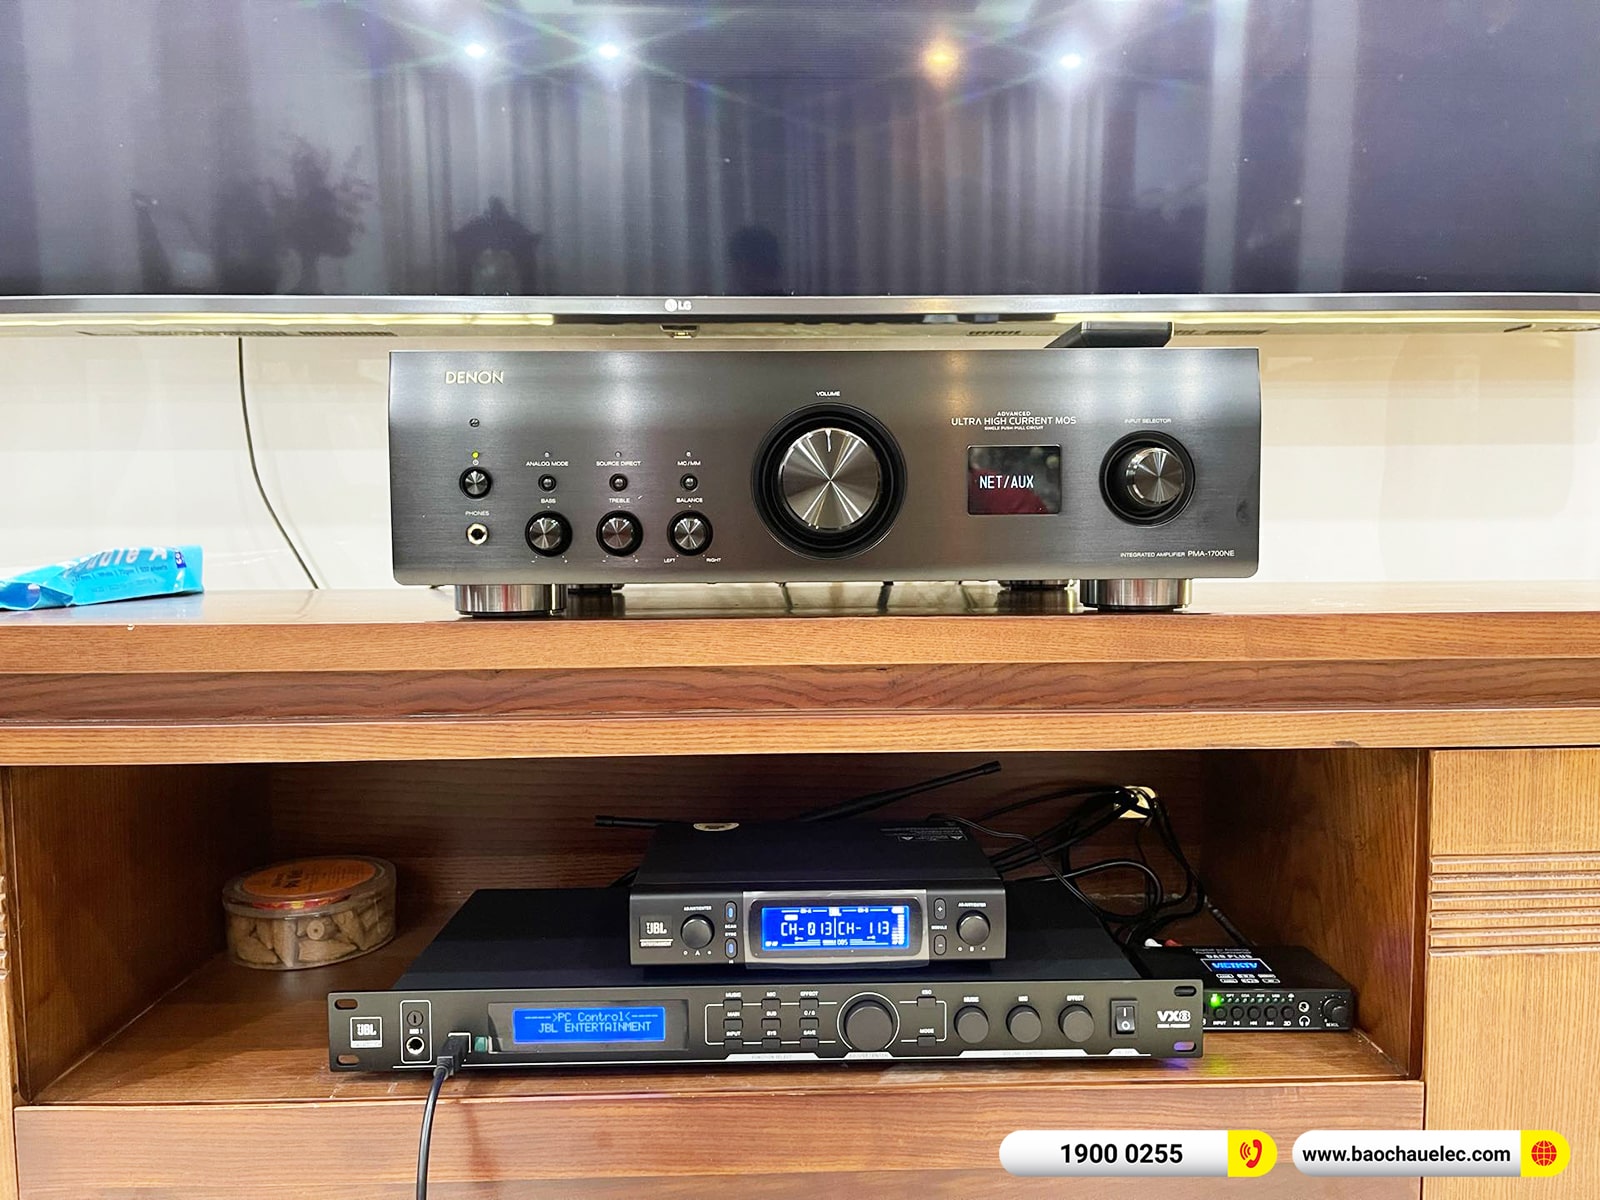 Lắp đặt dàn karaoke, nghe nhạc JBL hơn 96tr cho anh Hoàng tại Hải Phòng (JBL Studio 698, PMA 1700NE, JBL VX8, VM300) 